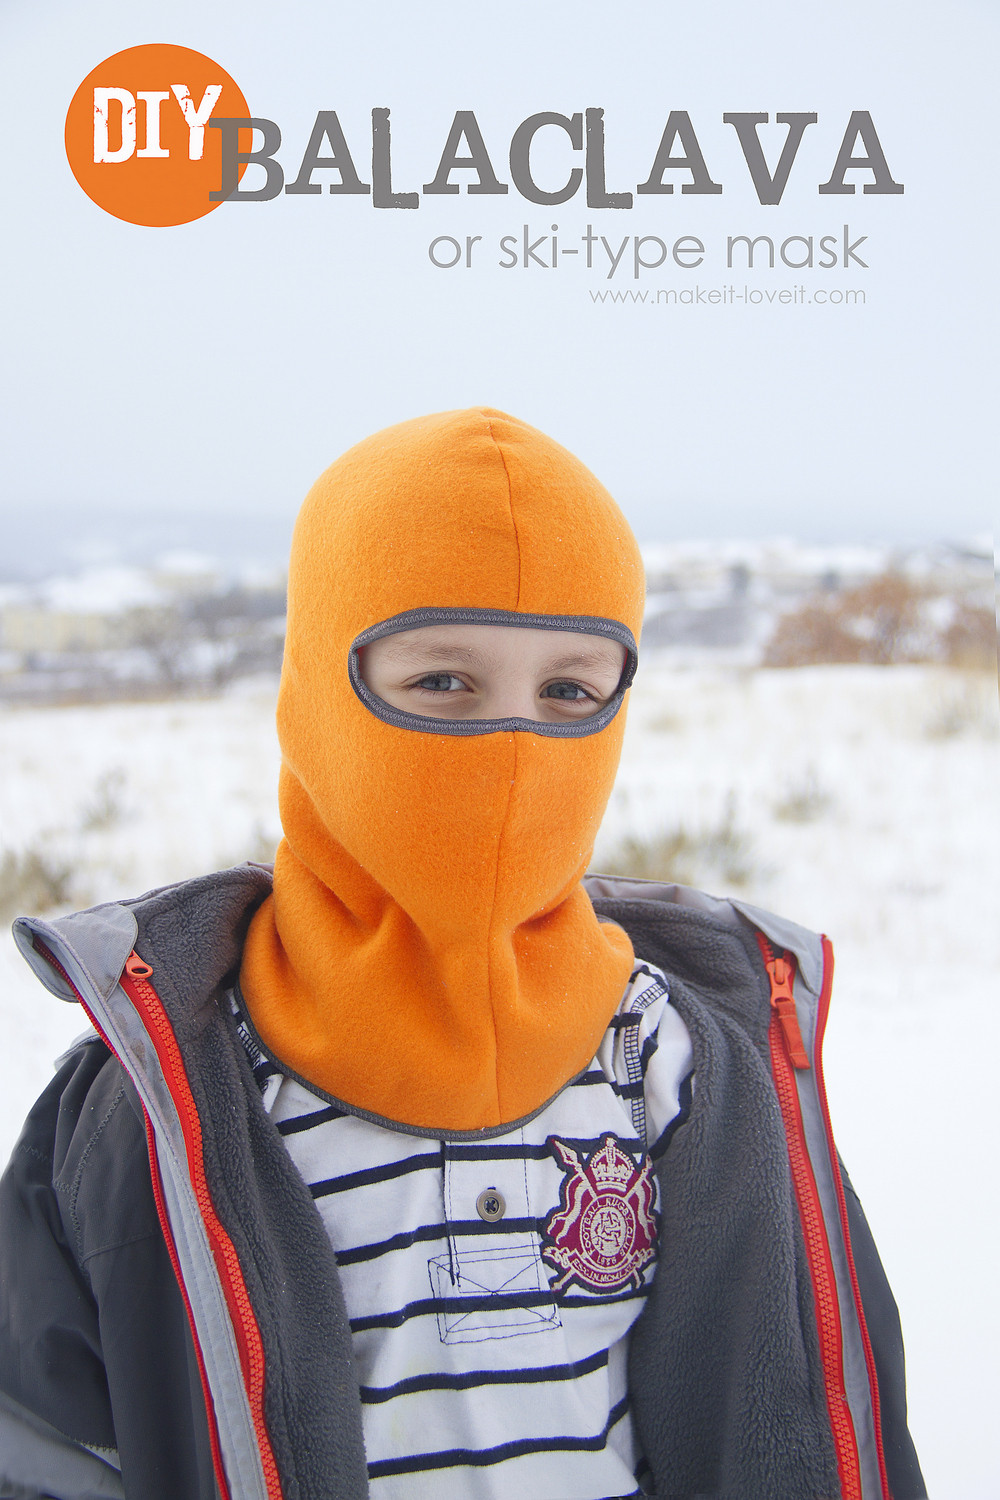 DIY Ski Mask
 Make your own Balaclava or ski type mask